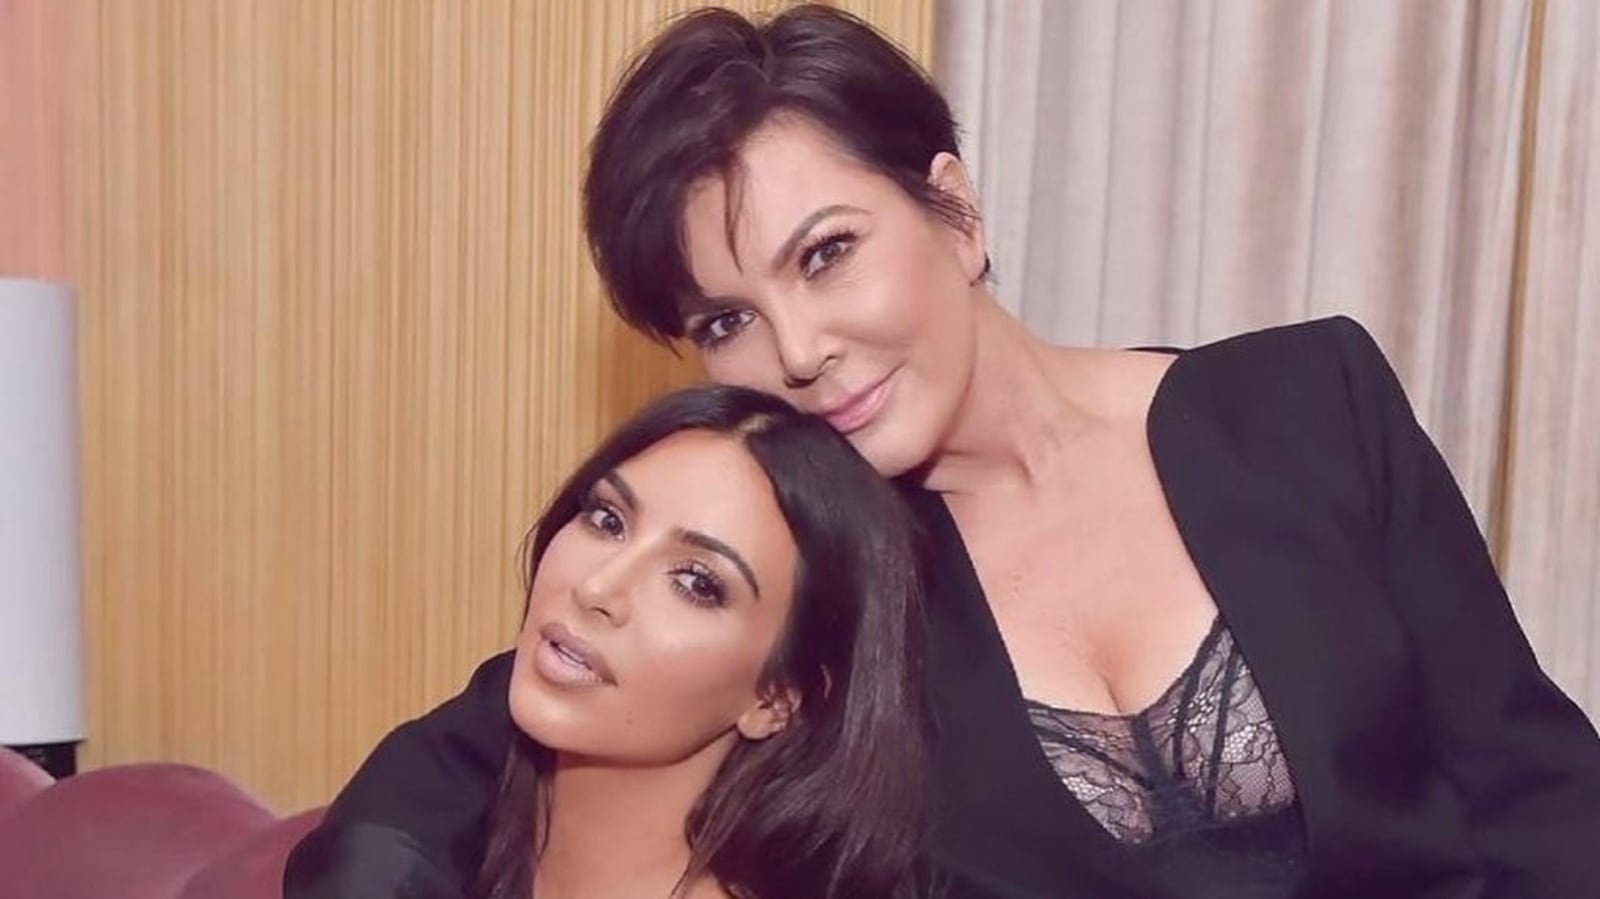 Kim kardashian leak video